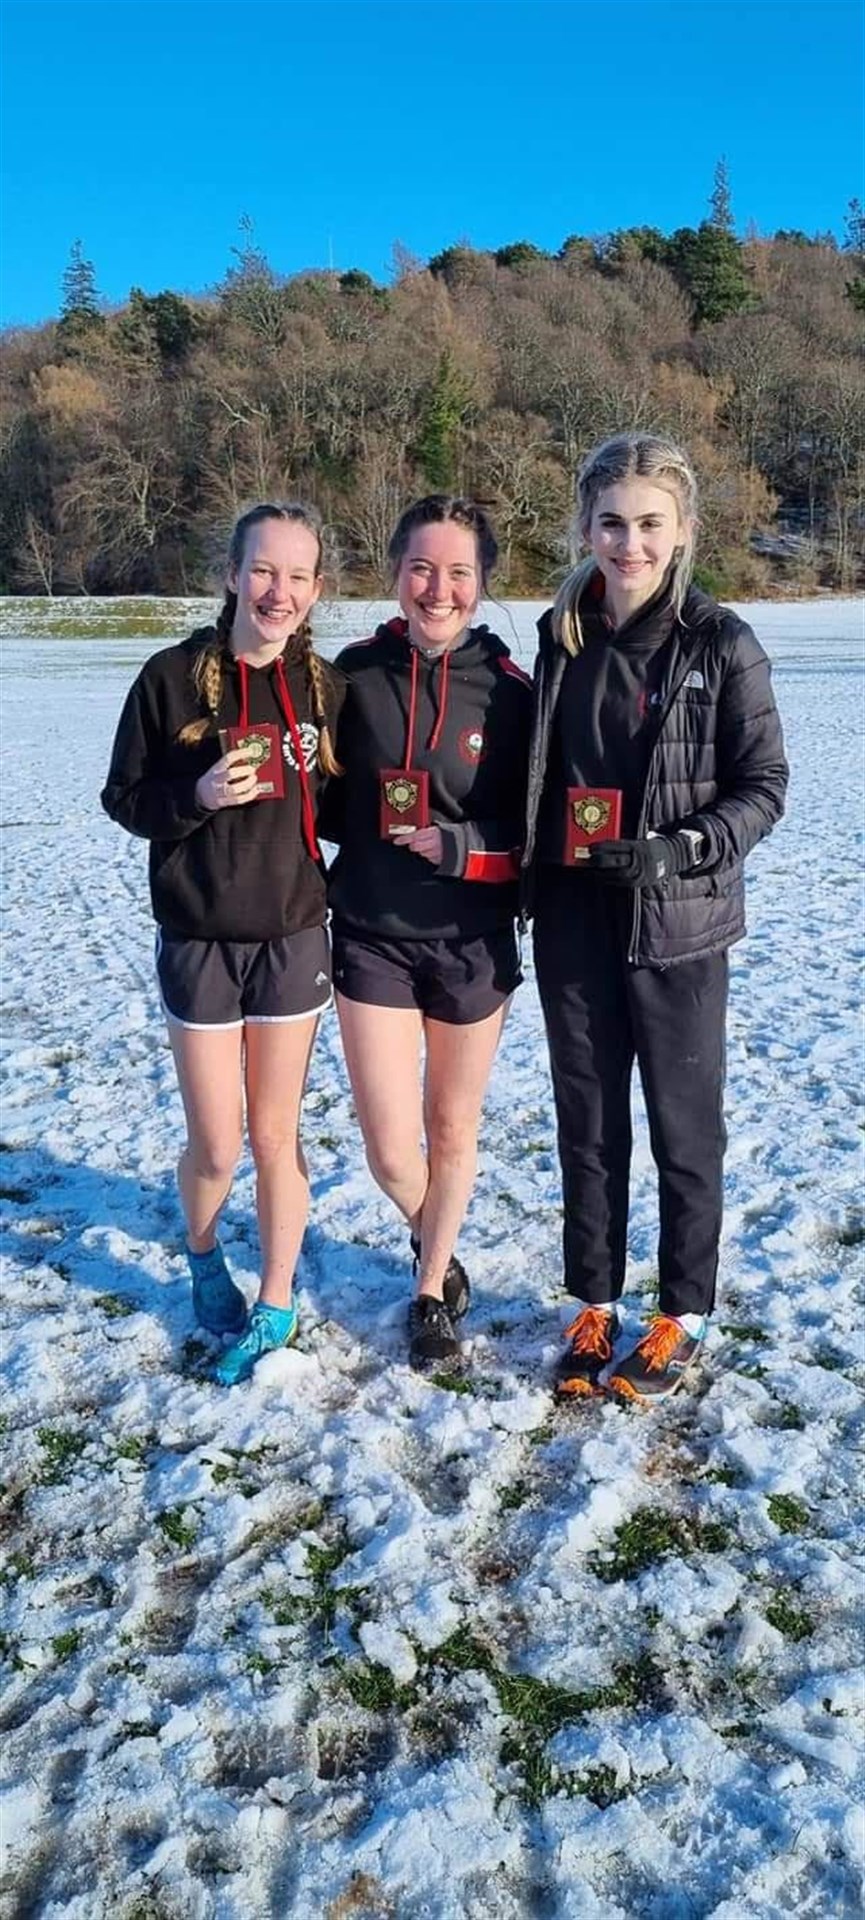 Ross County Athletics Club's Under 17 girls winning team: L-R Emily Bell, Morag Lynch and Rhiannon Ebrihem.